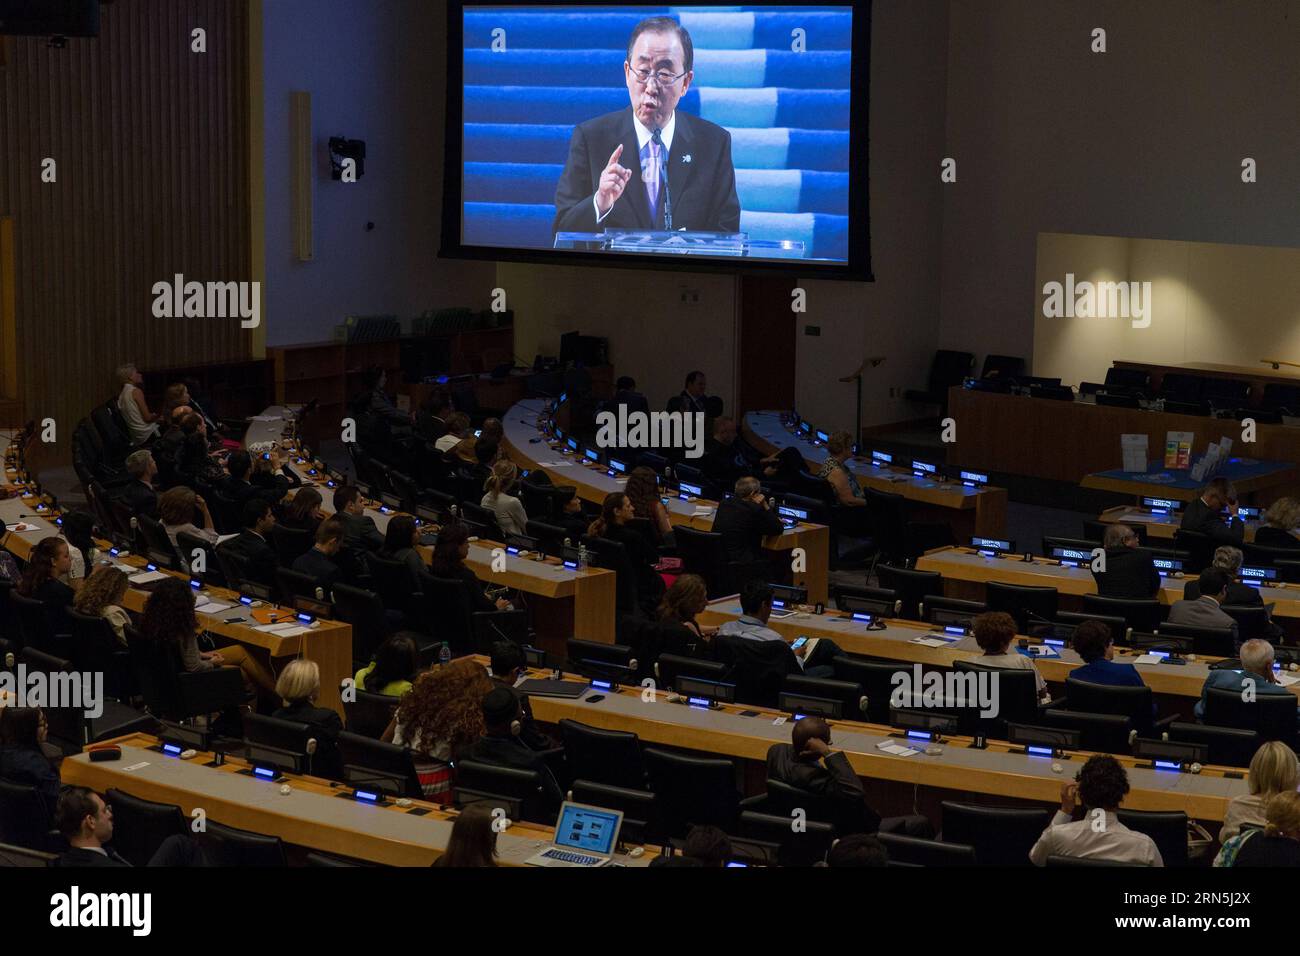 Das Foto wurde am 26. Juni 2015 aufgenommen und zeigt, wie die Menschen den Live-Stream von UN-Generalsekretär Ban Ki-moon Speaks in San Francisco beobachten. Anlässlich einer Sonderveranstaltung anlässlich des 70. Jahrestages der Unterzeichnung der Charta der Vereinten Nationen im Hauptquartier der Vereinten Nationen in New York, USA, findet eine Sonderveranstaltung statt. UN-Generalsekretär Ban Ki-moon war am Freitag in San Francisco zu einer Veranstaltung zum Gedenken an den 70. Jahrestag der Unterzeichnung der Charta der Vereinten Nationen, die erneut das erneute Engagement der internationalen Gemeinschaft für das Grundsatzdokument zum Ausdruck brachte, das die internationalen Beziehungen geleitet hat Stockfoto